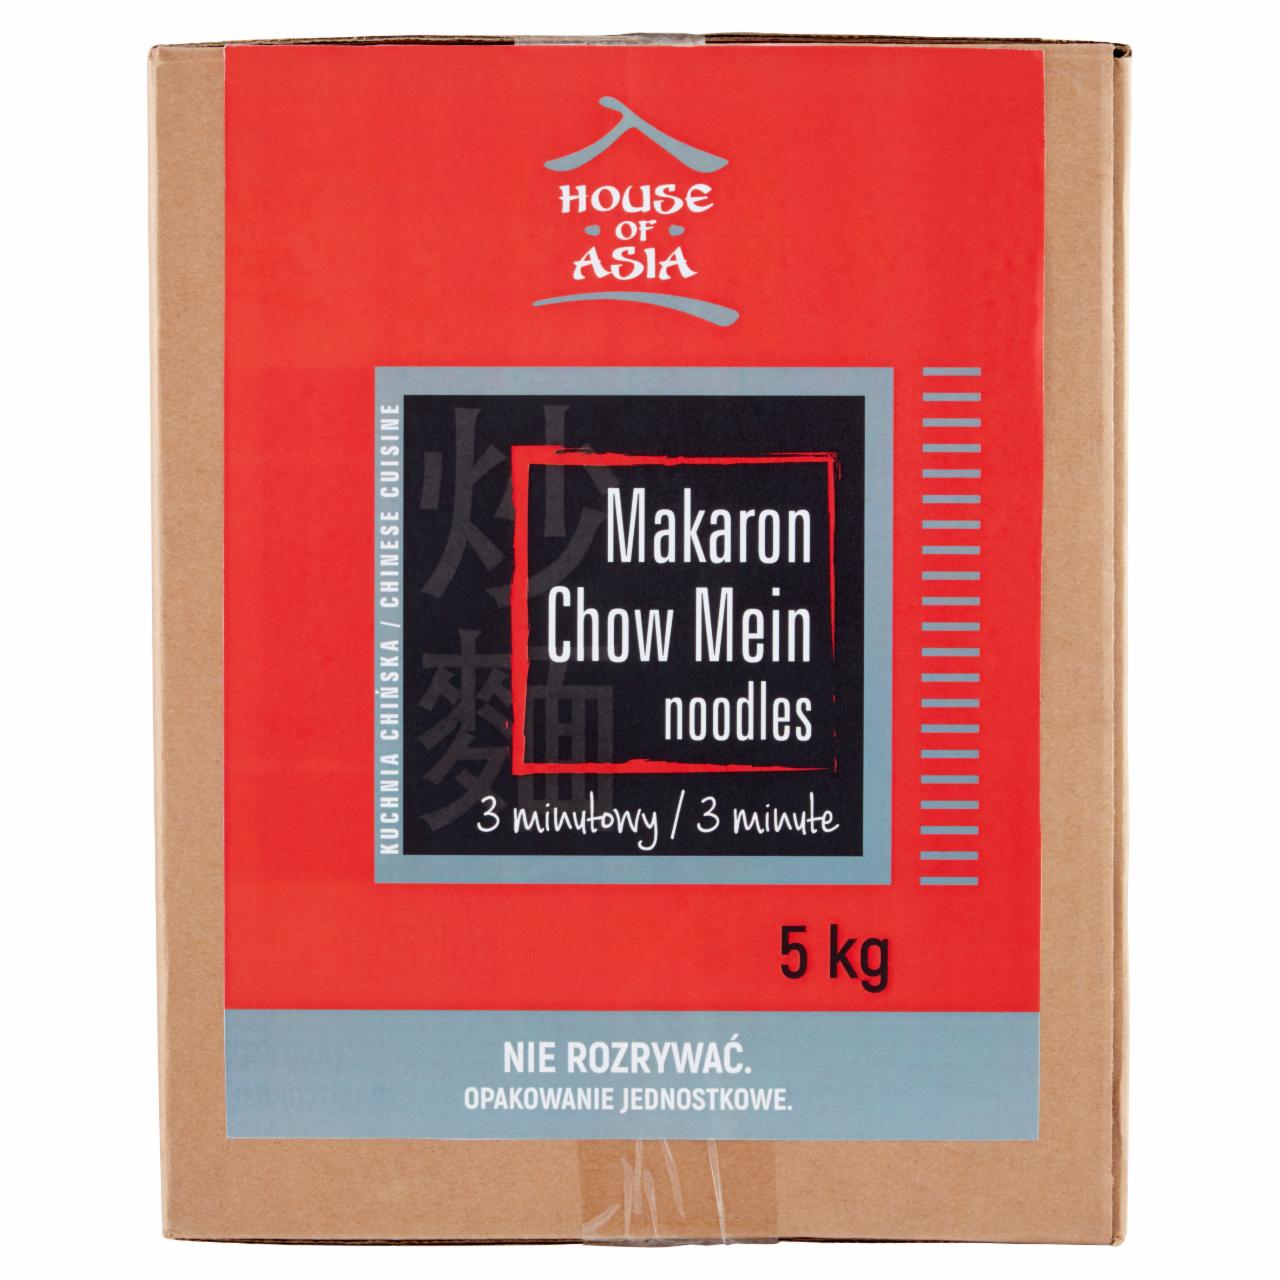 Zdjęcia - House of Asia Makaron chow mein 5 kg